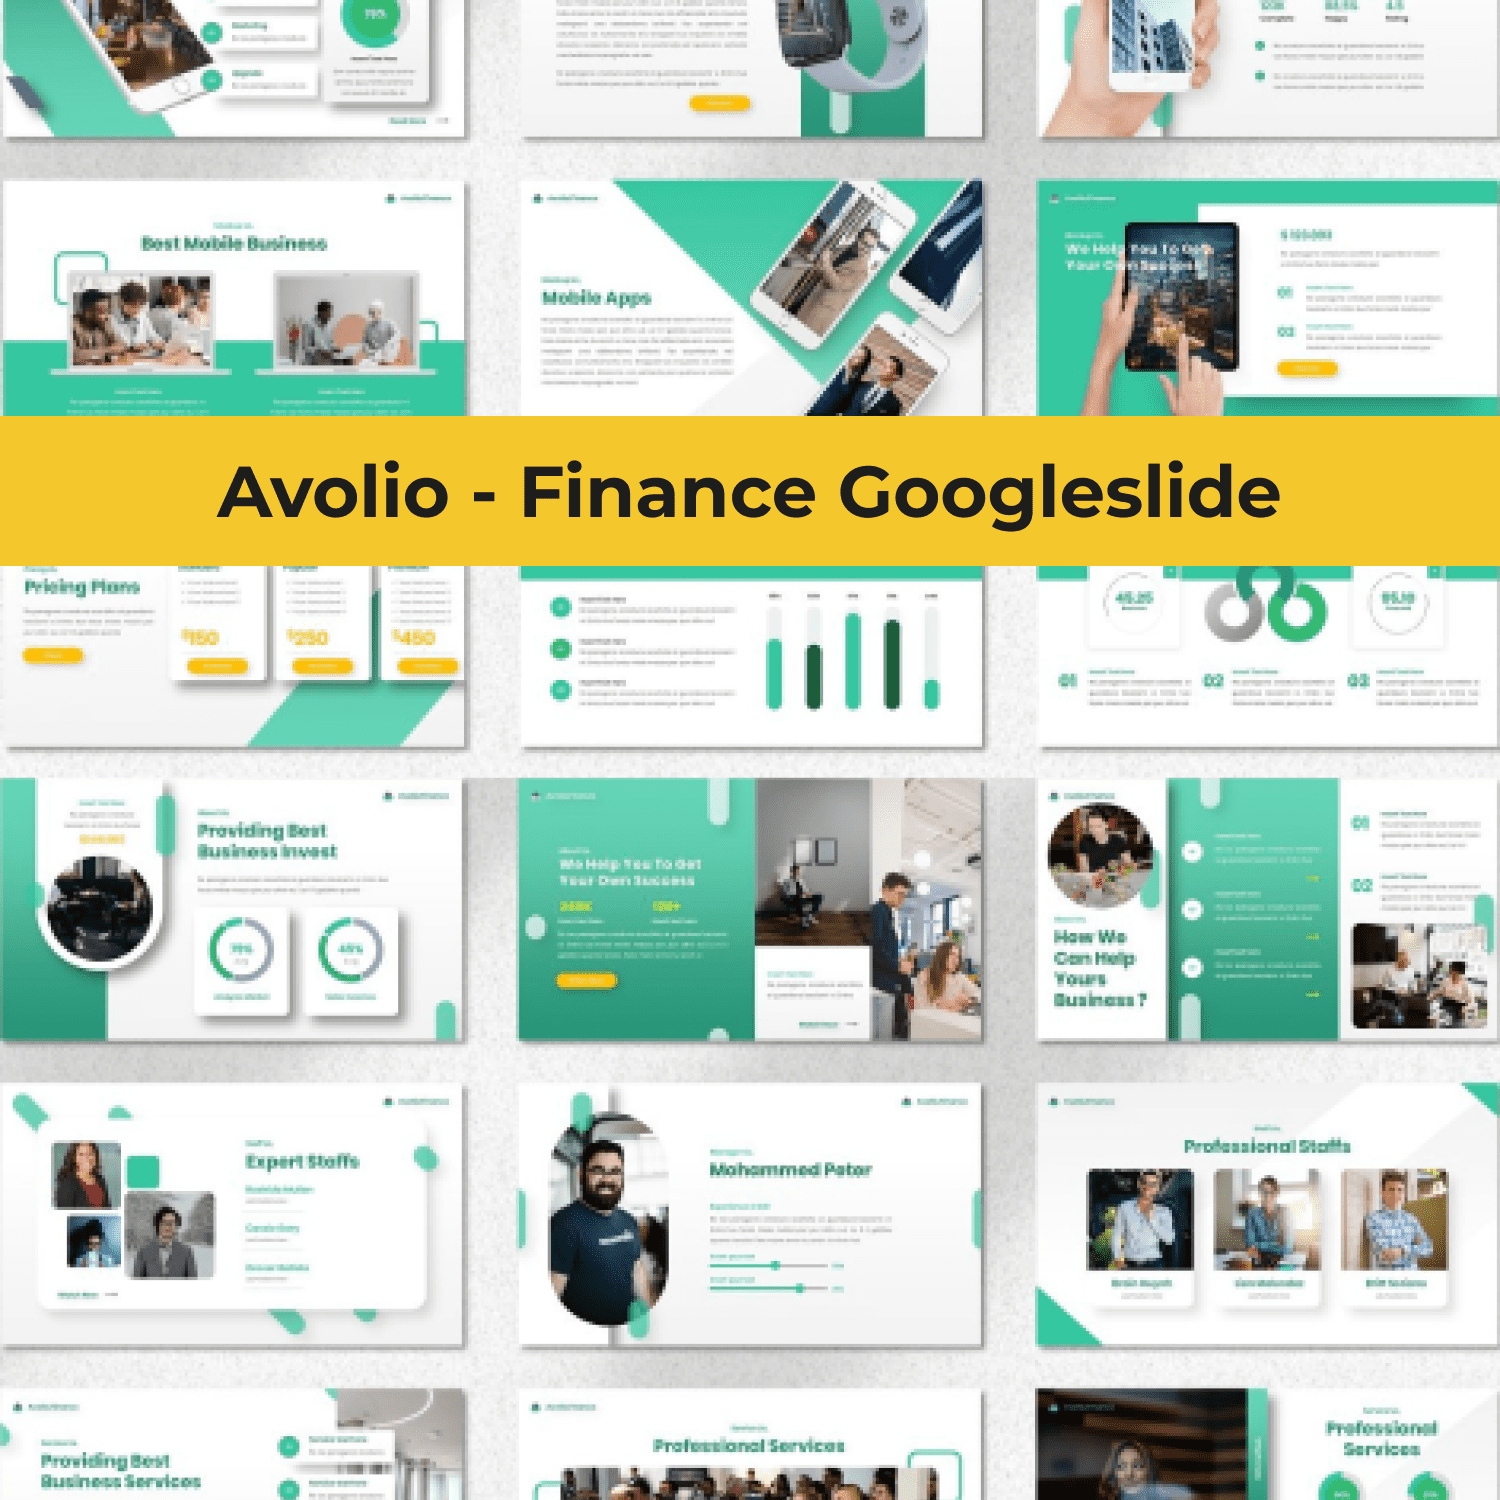 Avolio - Finance Googleslide cover image.